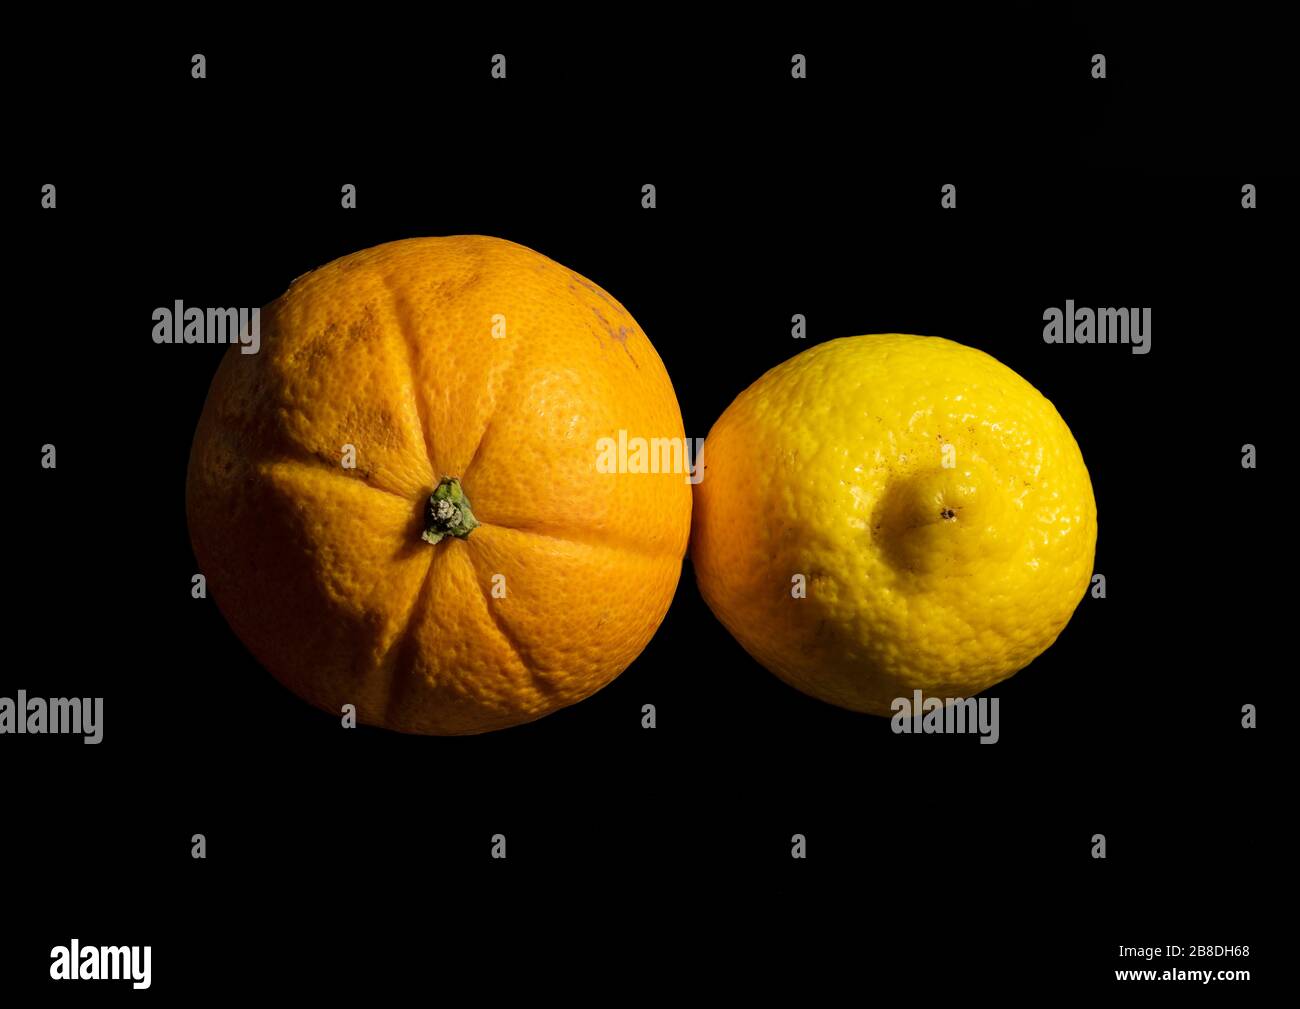 Imagen de primer plano de una naranja y un limón mediante una técnica de apilado de enfoque que renderiza los sujetos con un enfoque nítido de delante hacia atrás Foto de stock